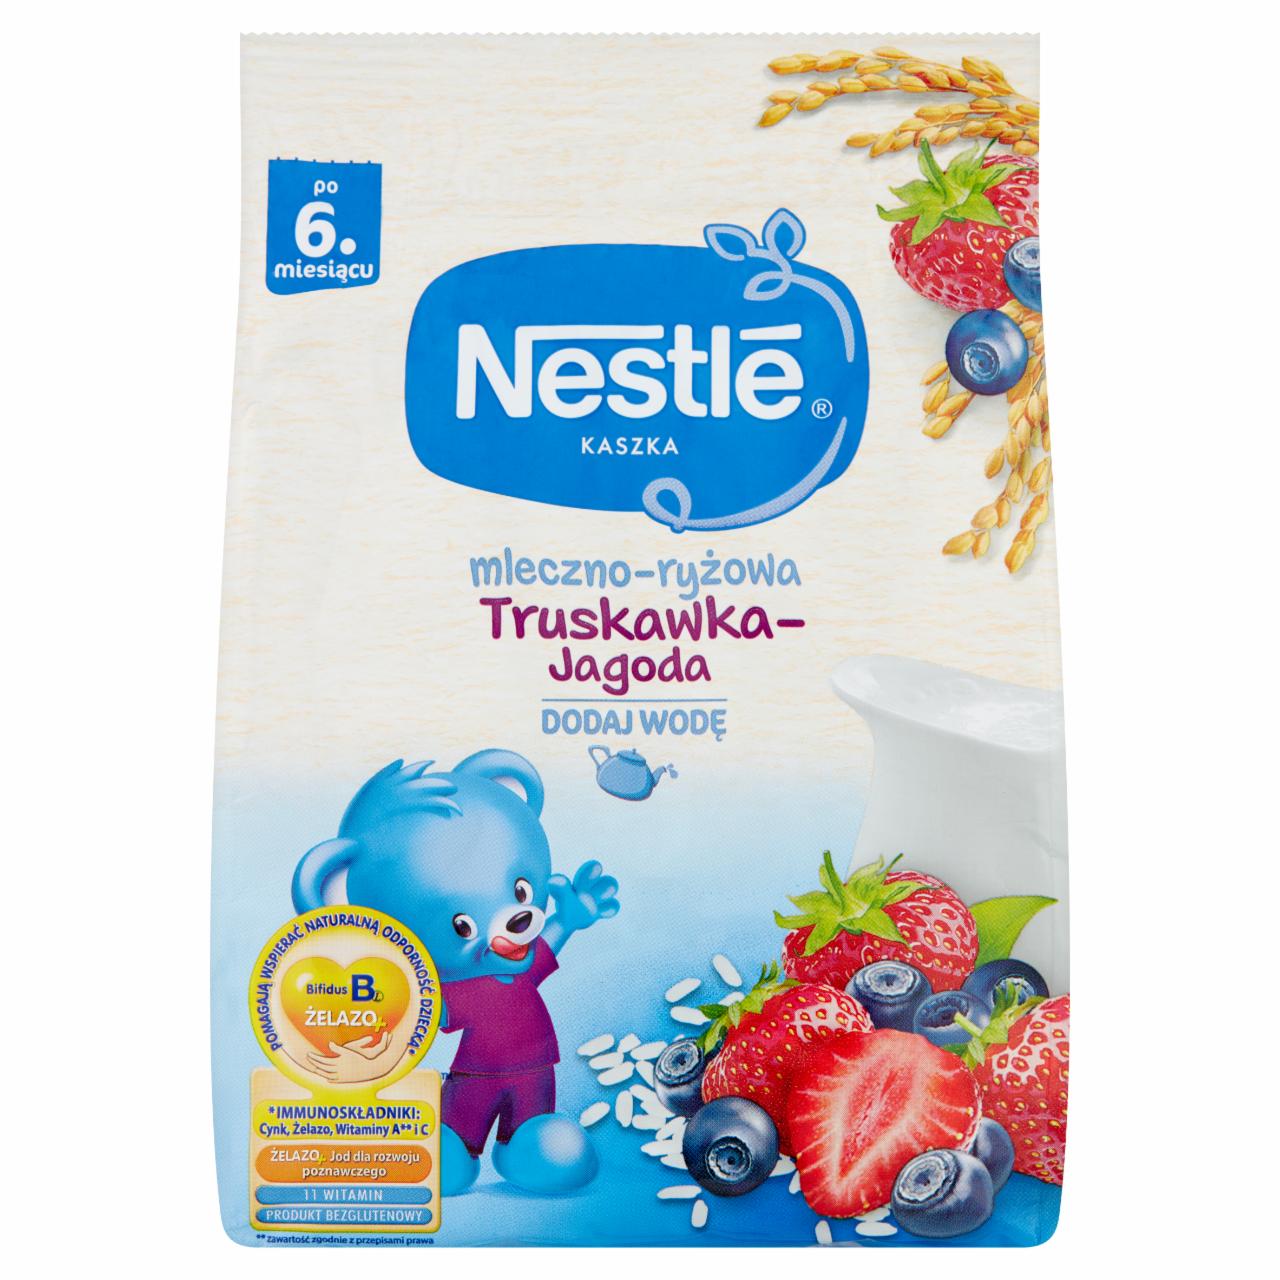 Zdjęcia - Nestlé Kaszka mleczno-ryżowa truskawka-jagoda dla niemowląt po 6. miesiącu 230 g